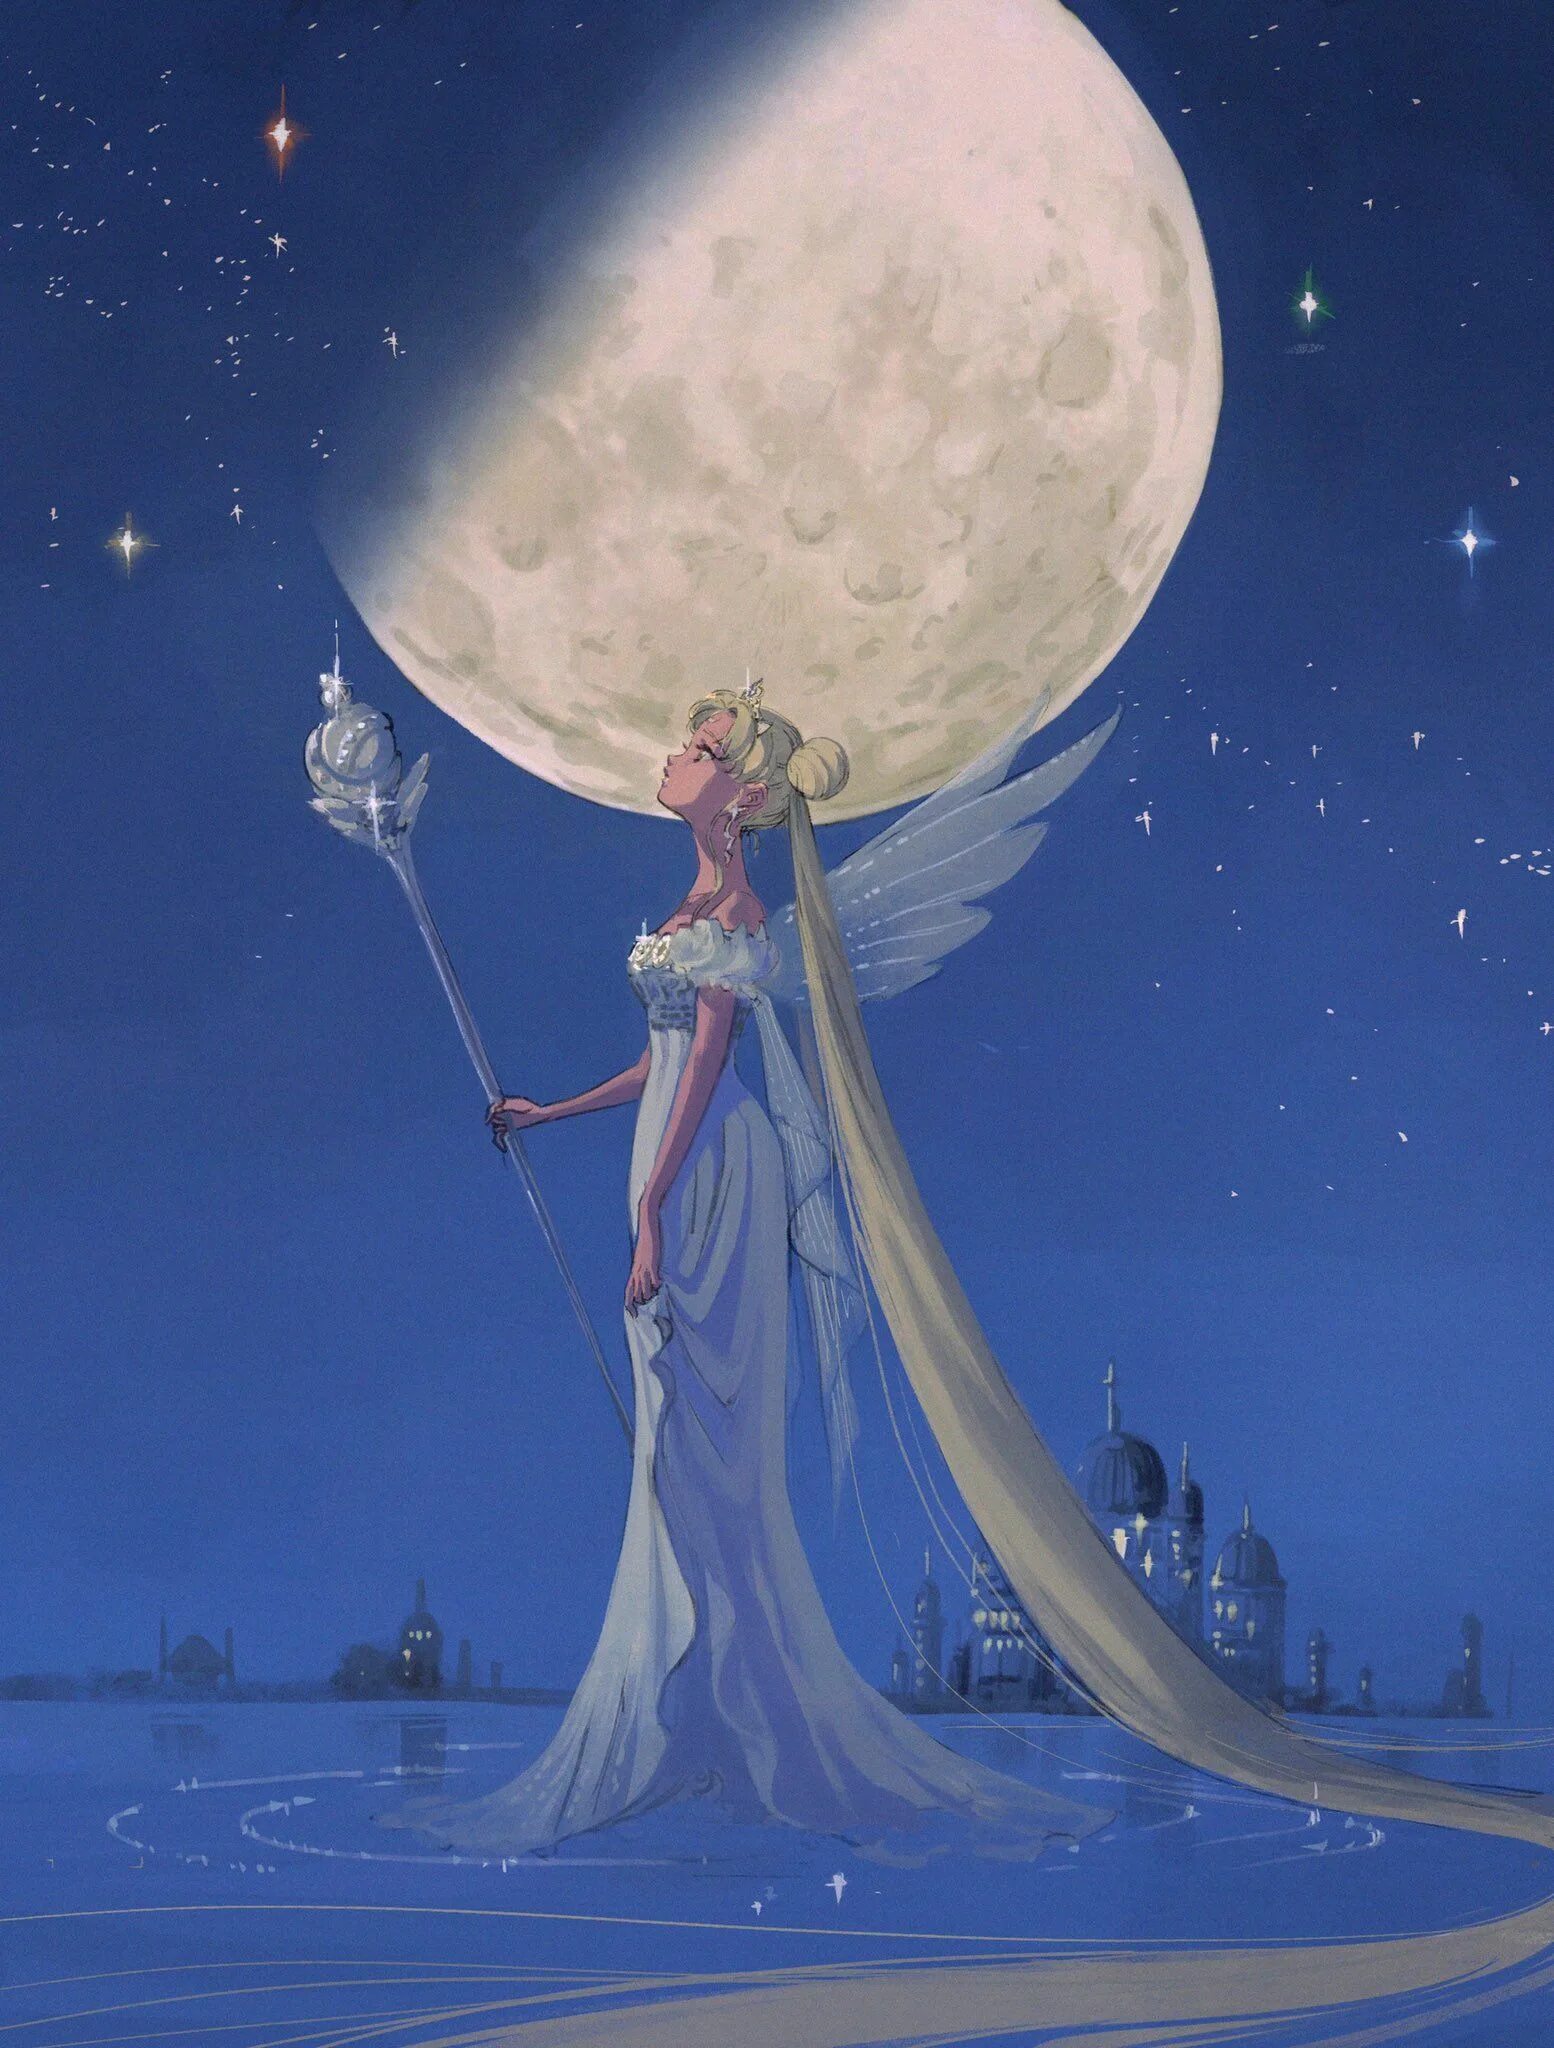 Queens moon. Серенити богиня Луны. Королева Серенити. Королева Серенити серебряного тысячелетия. Принцесса Серенити с посохом.